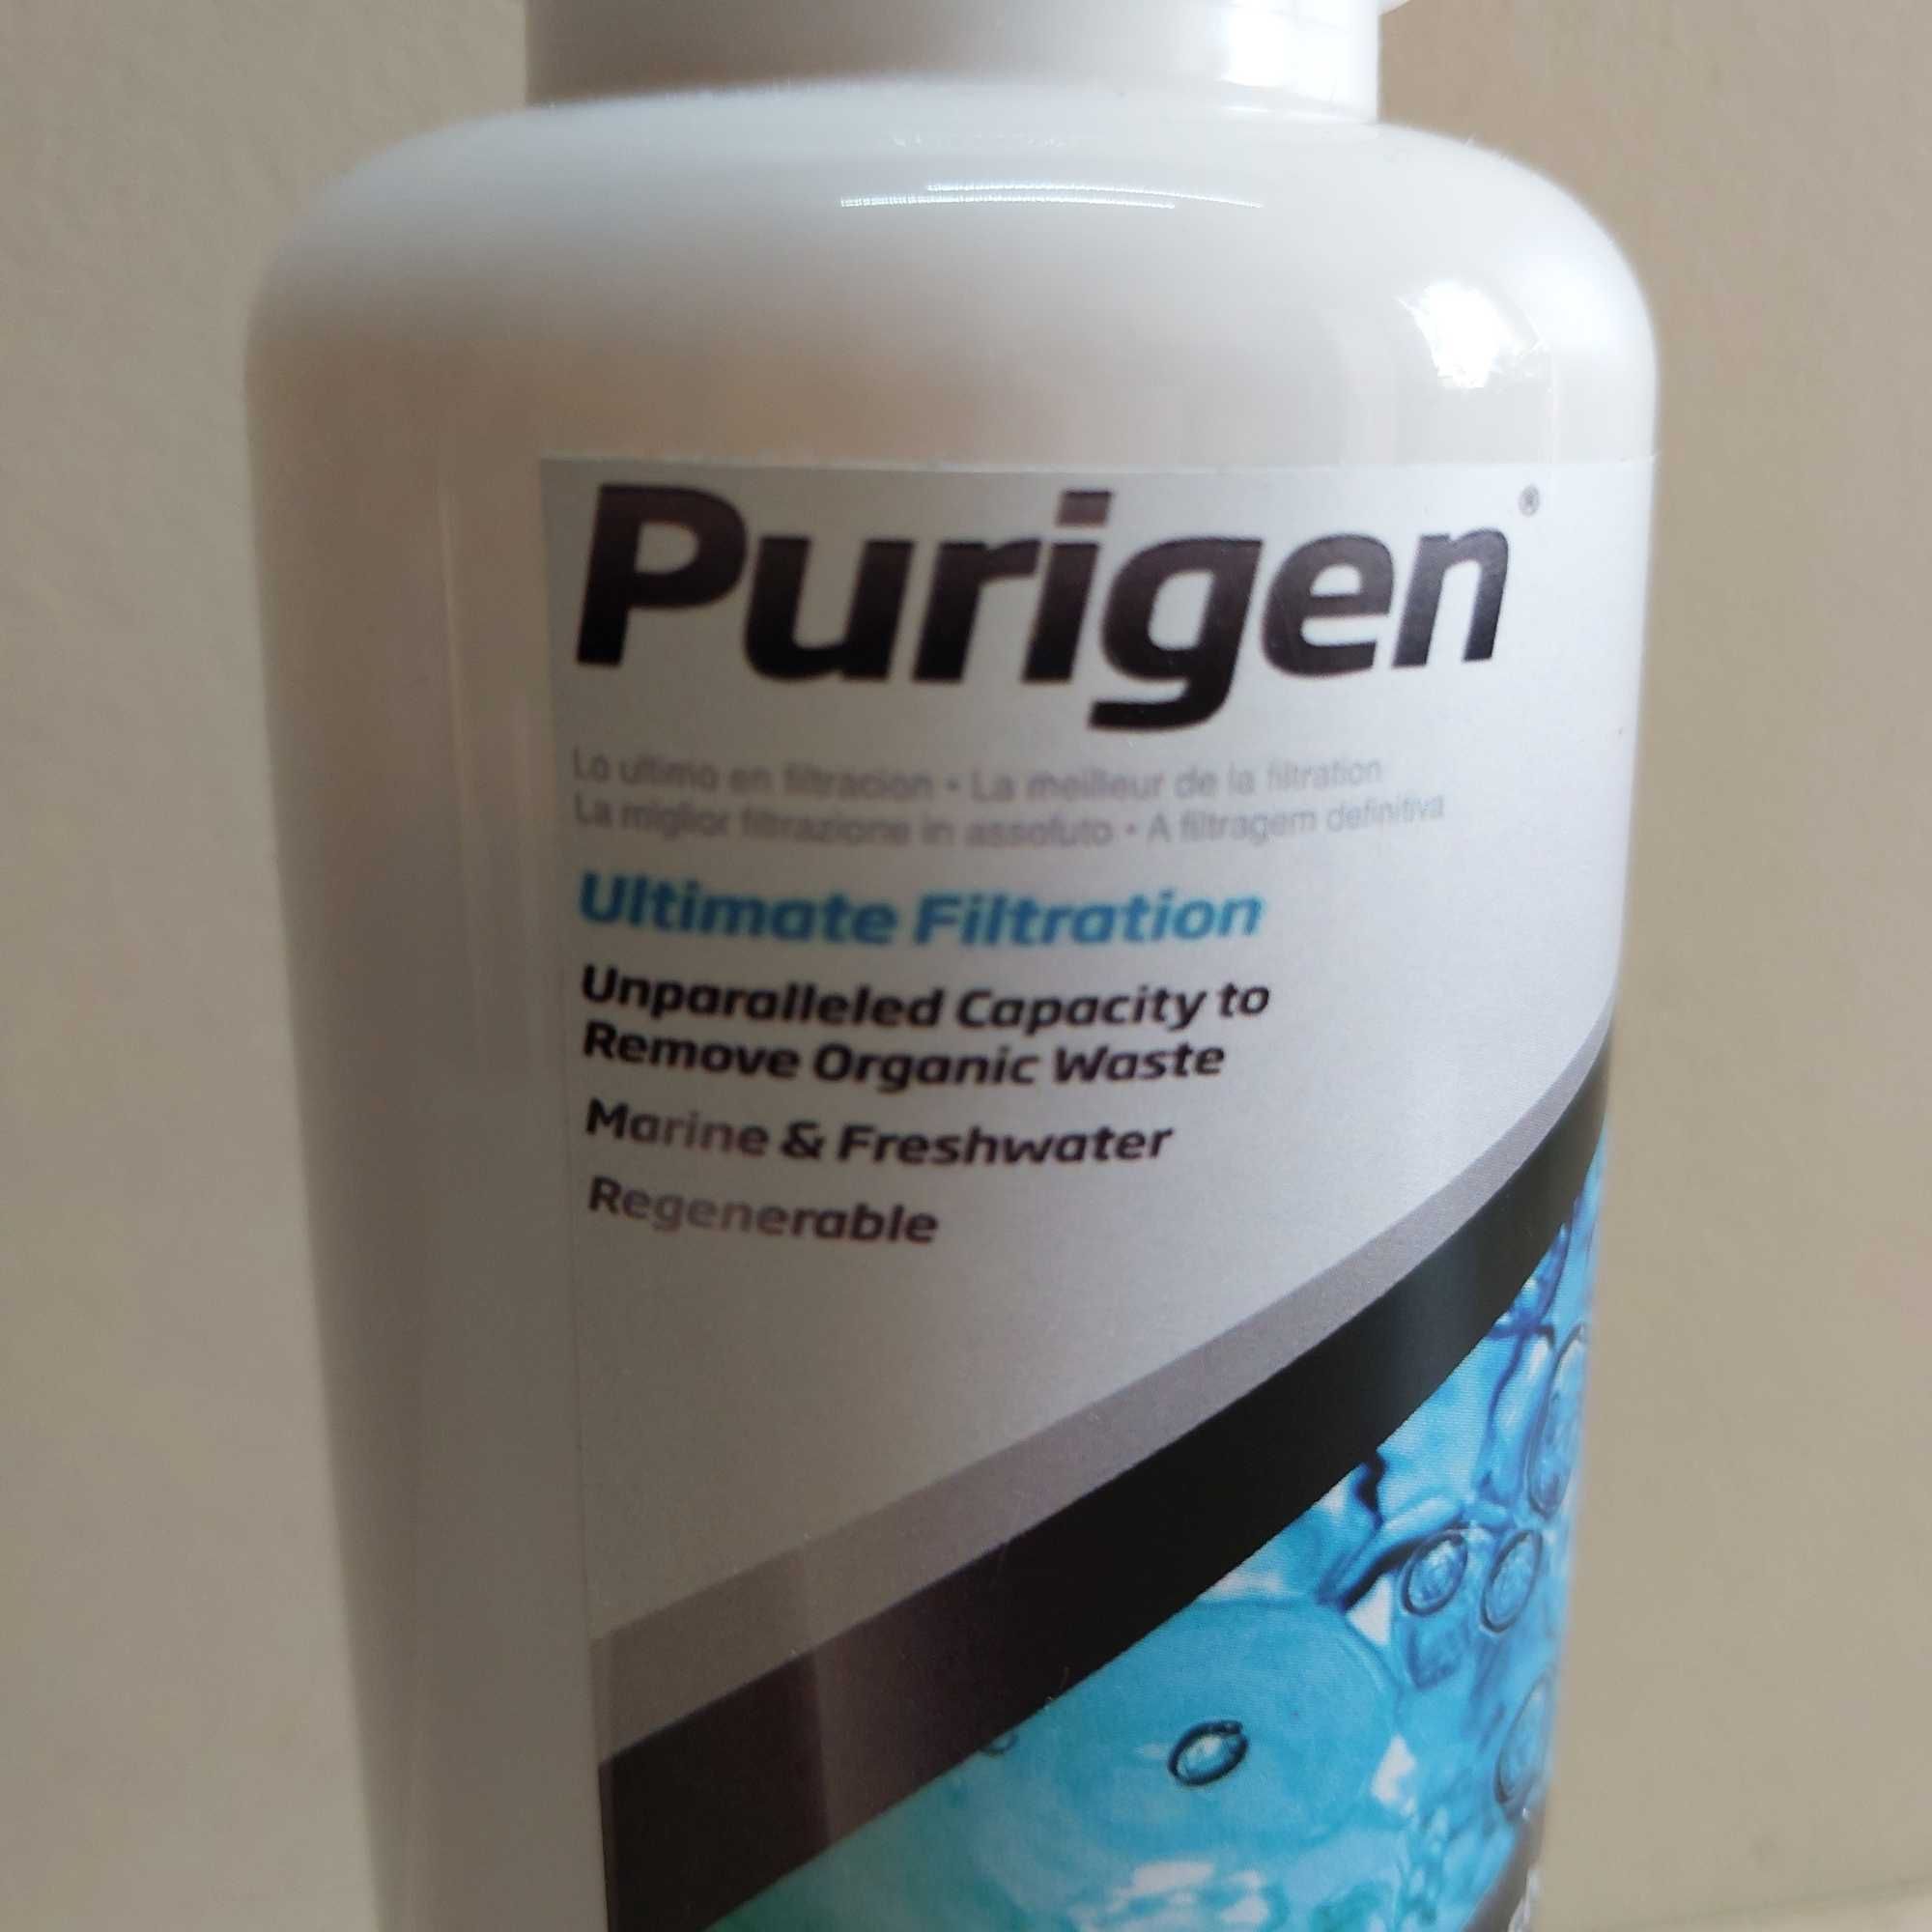 Purigen ultimate filtration 200ml